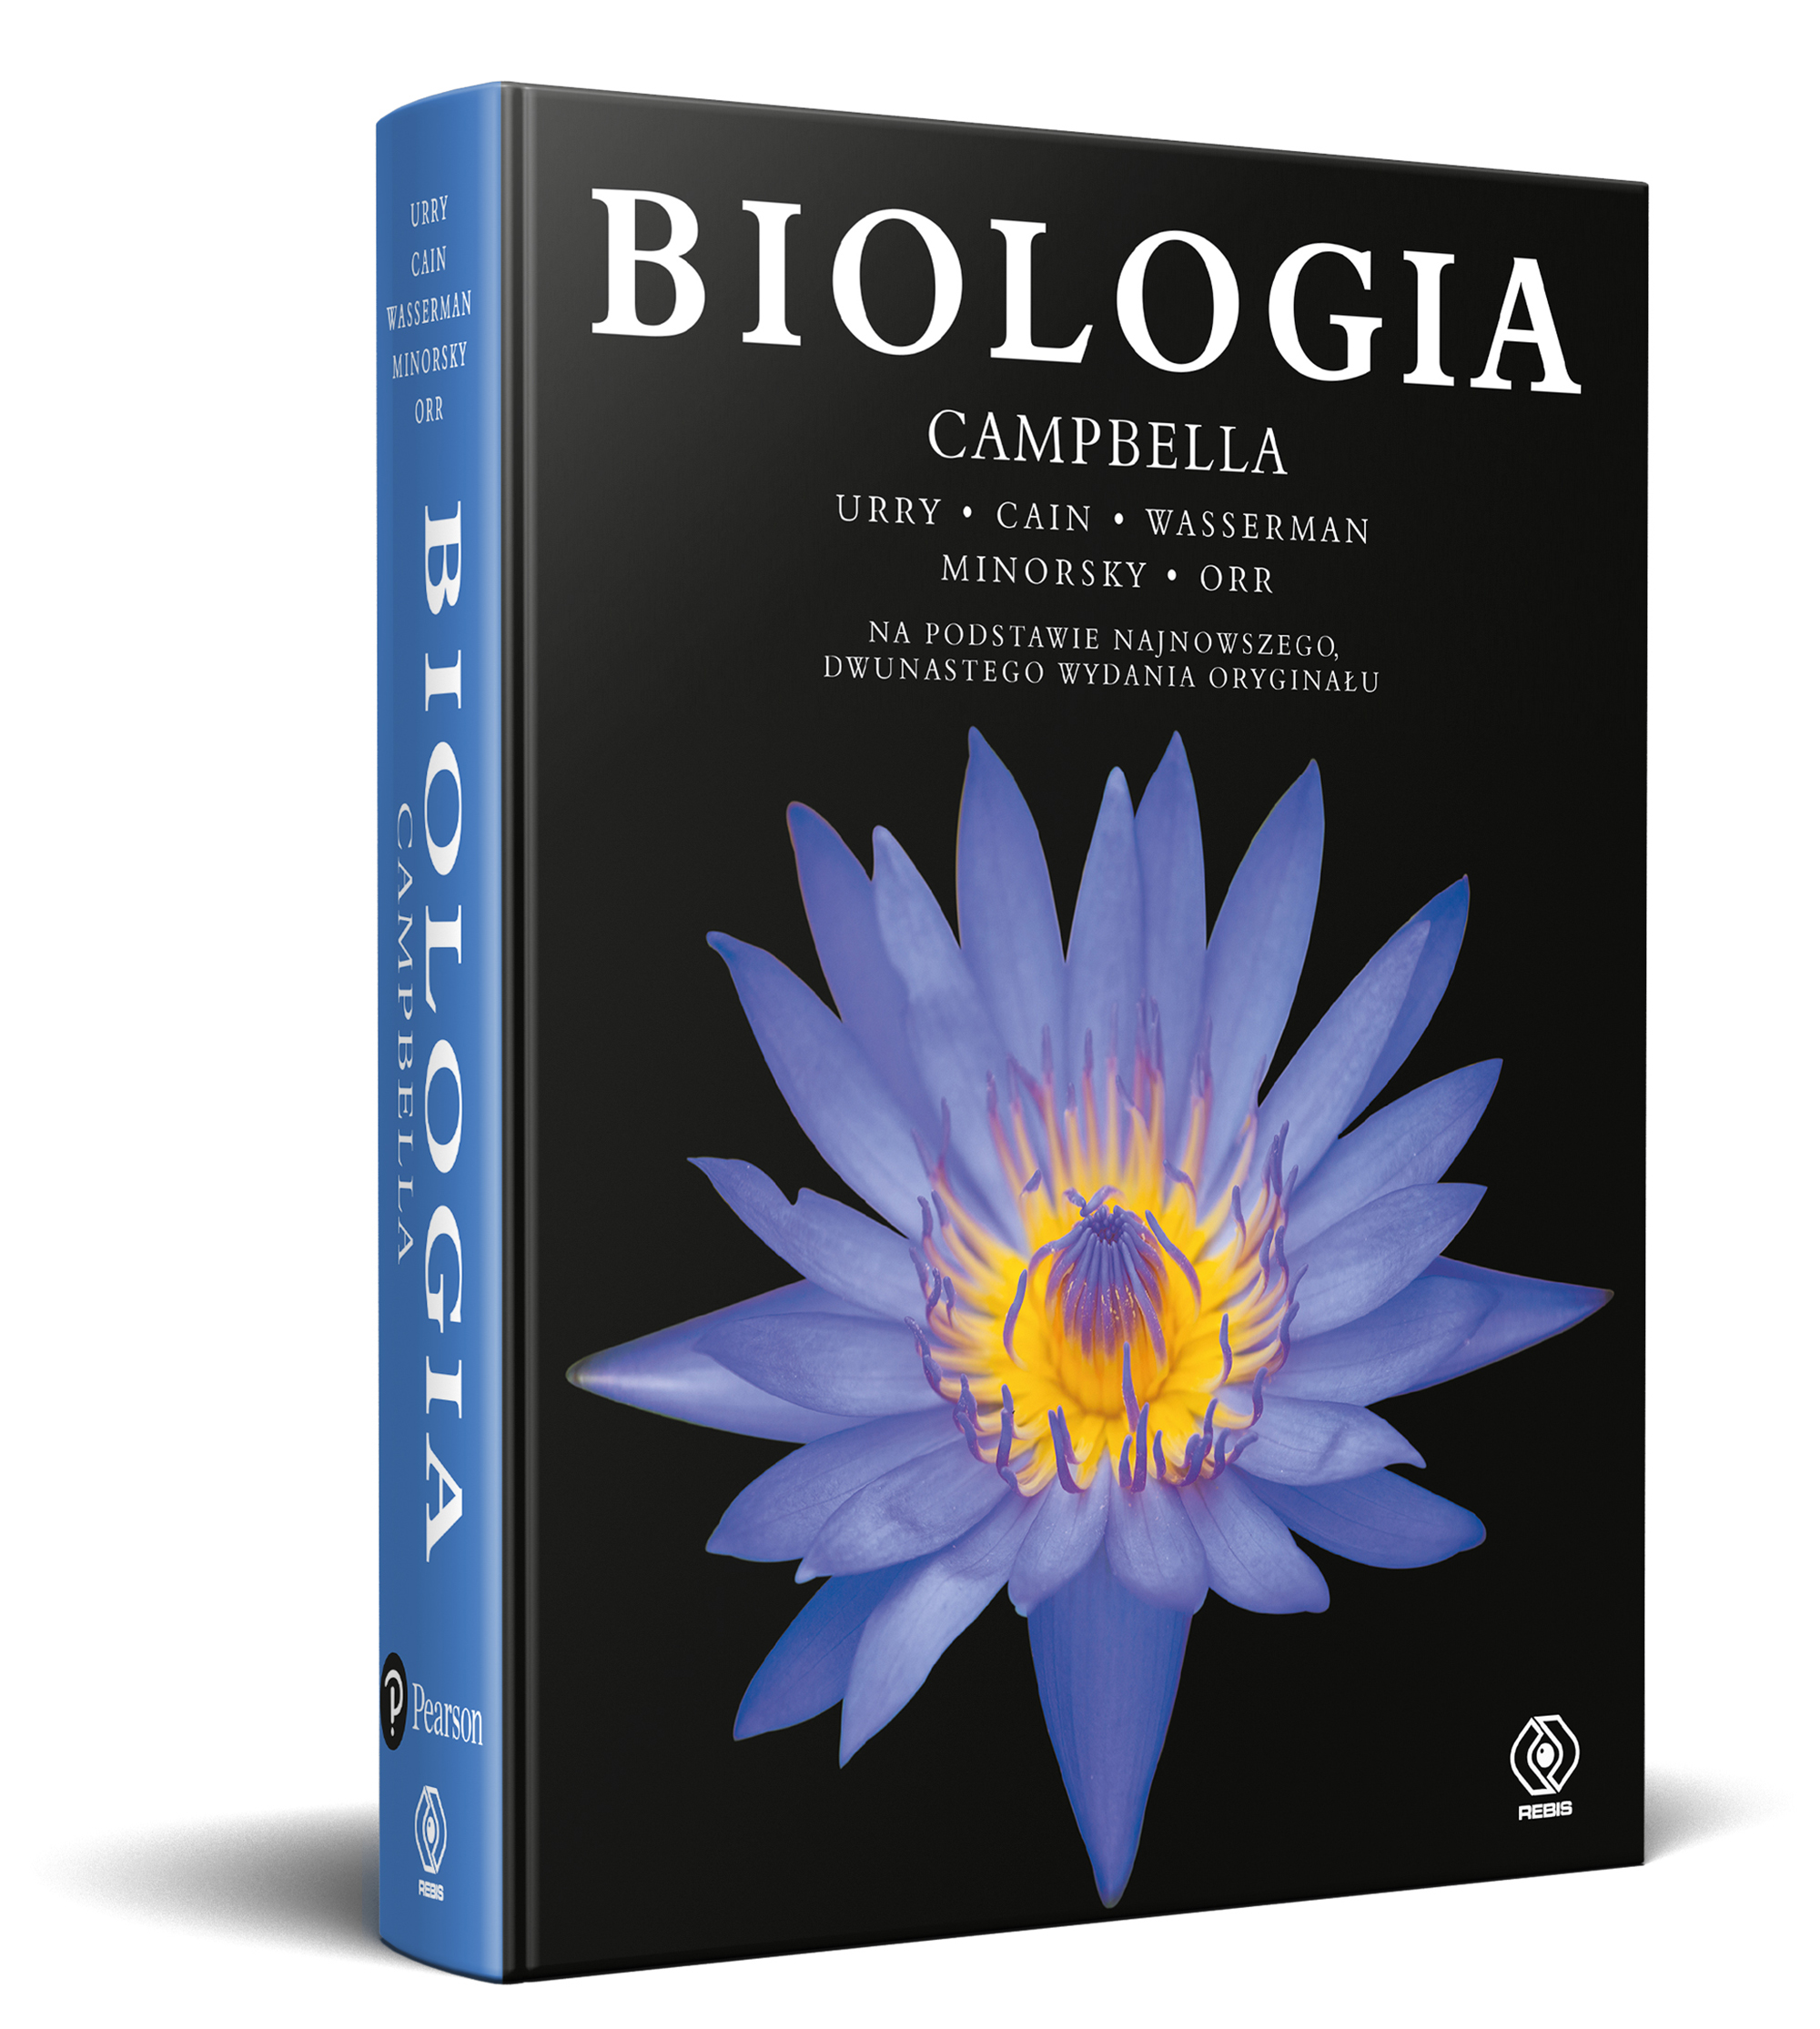 Polecamy najlepiej sprzedający się podręcznik biologii na świecie!